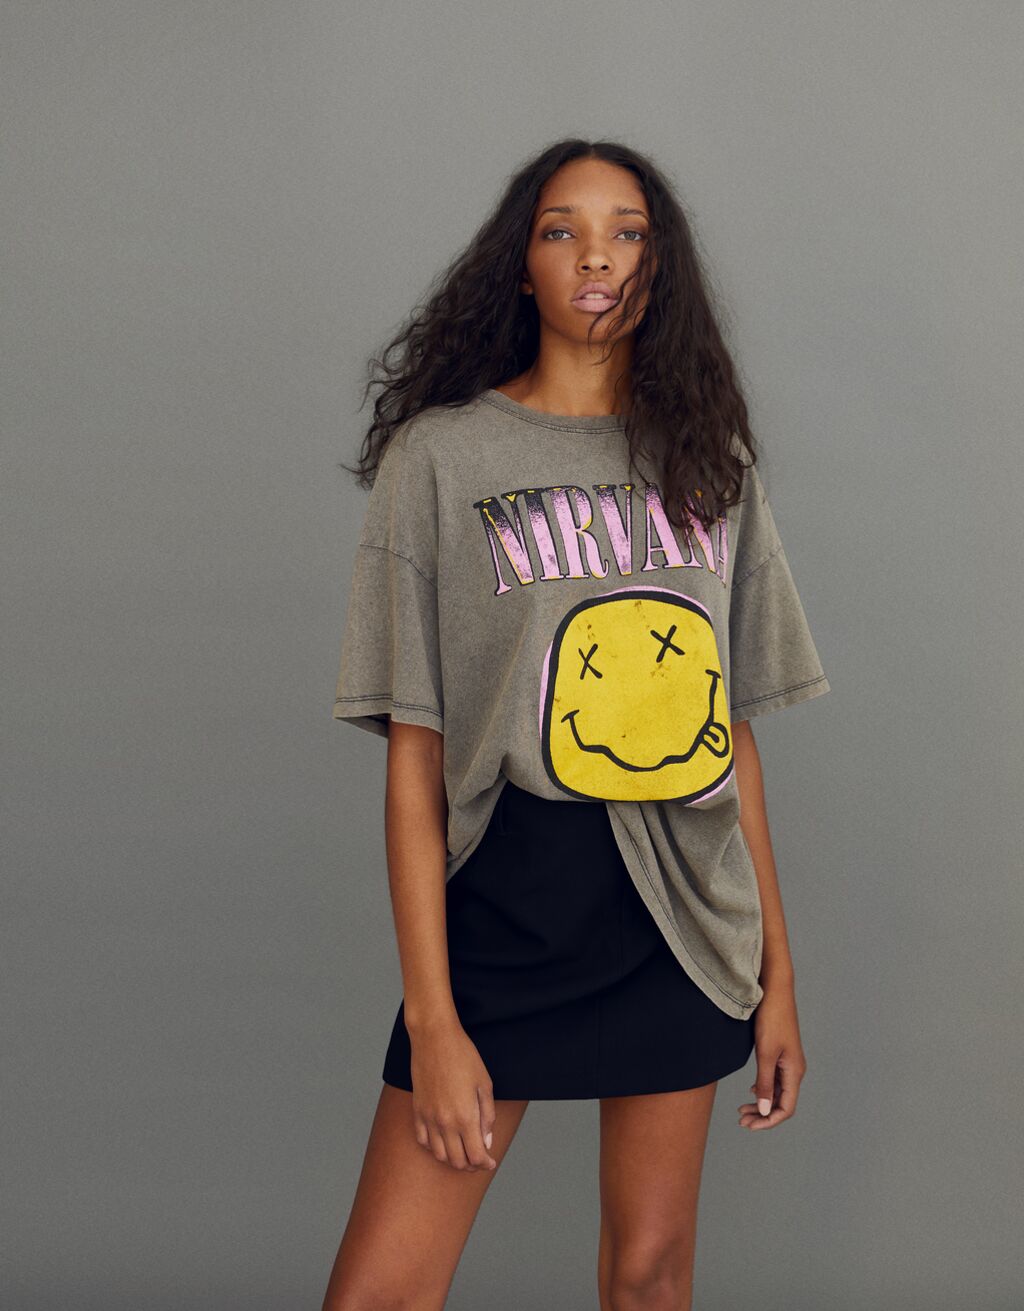 T-shirt met Nirvana-print en korte mouw